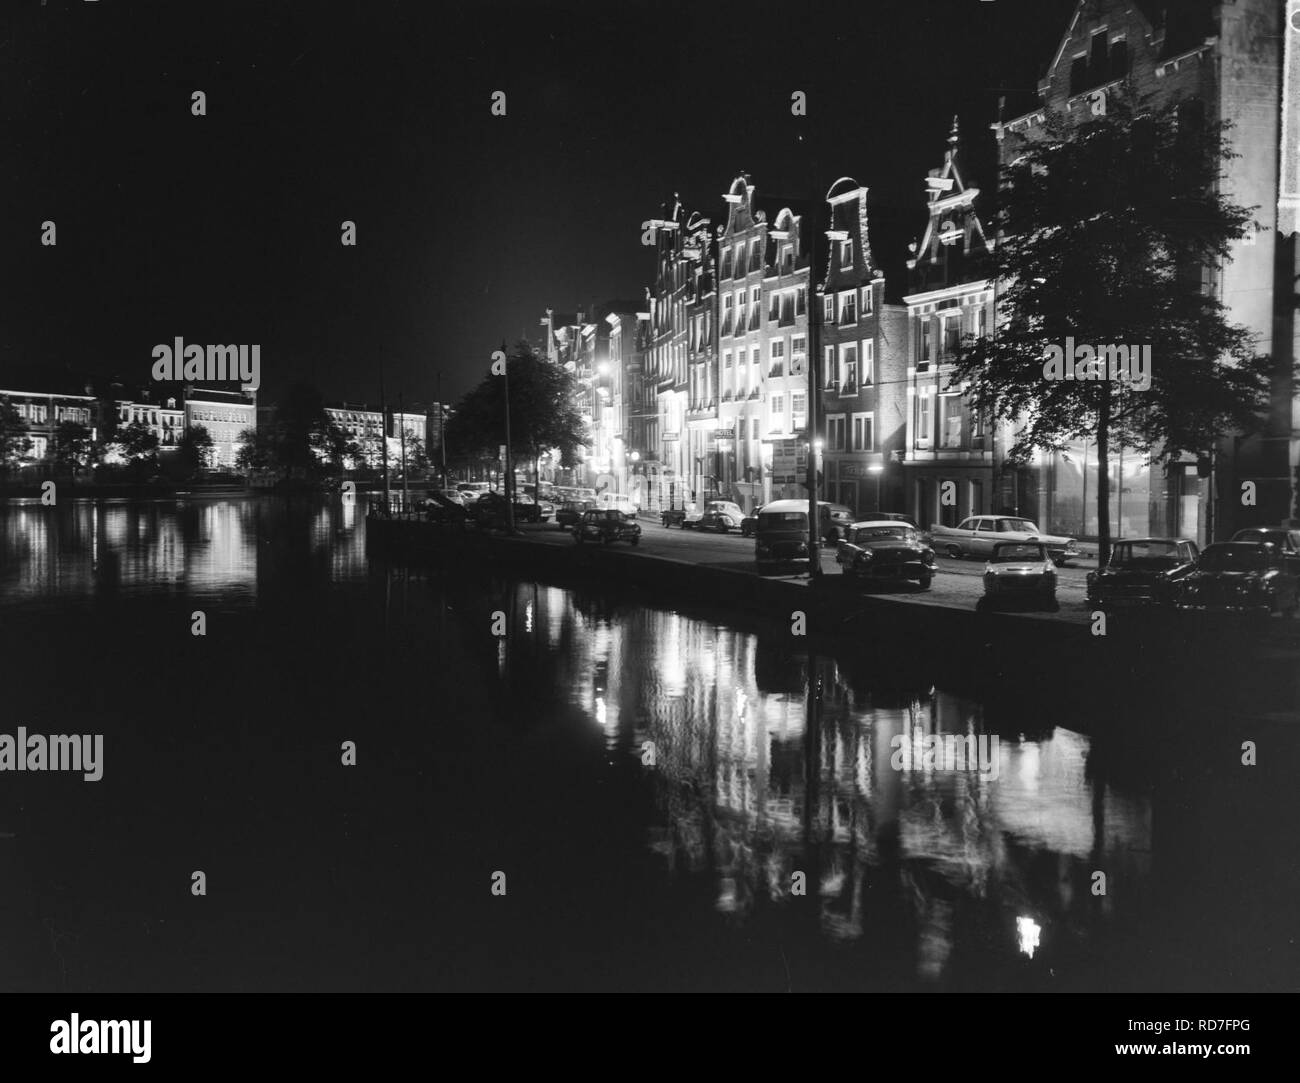 Amsterdam grachtenverlichting, Bestanddeelnr 915-2609. Stock Photo